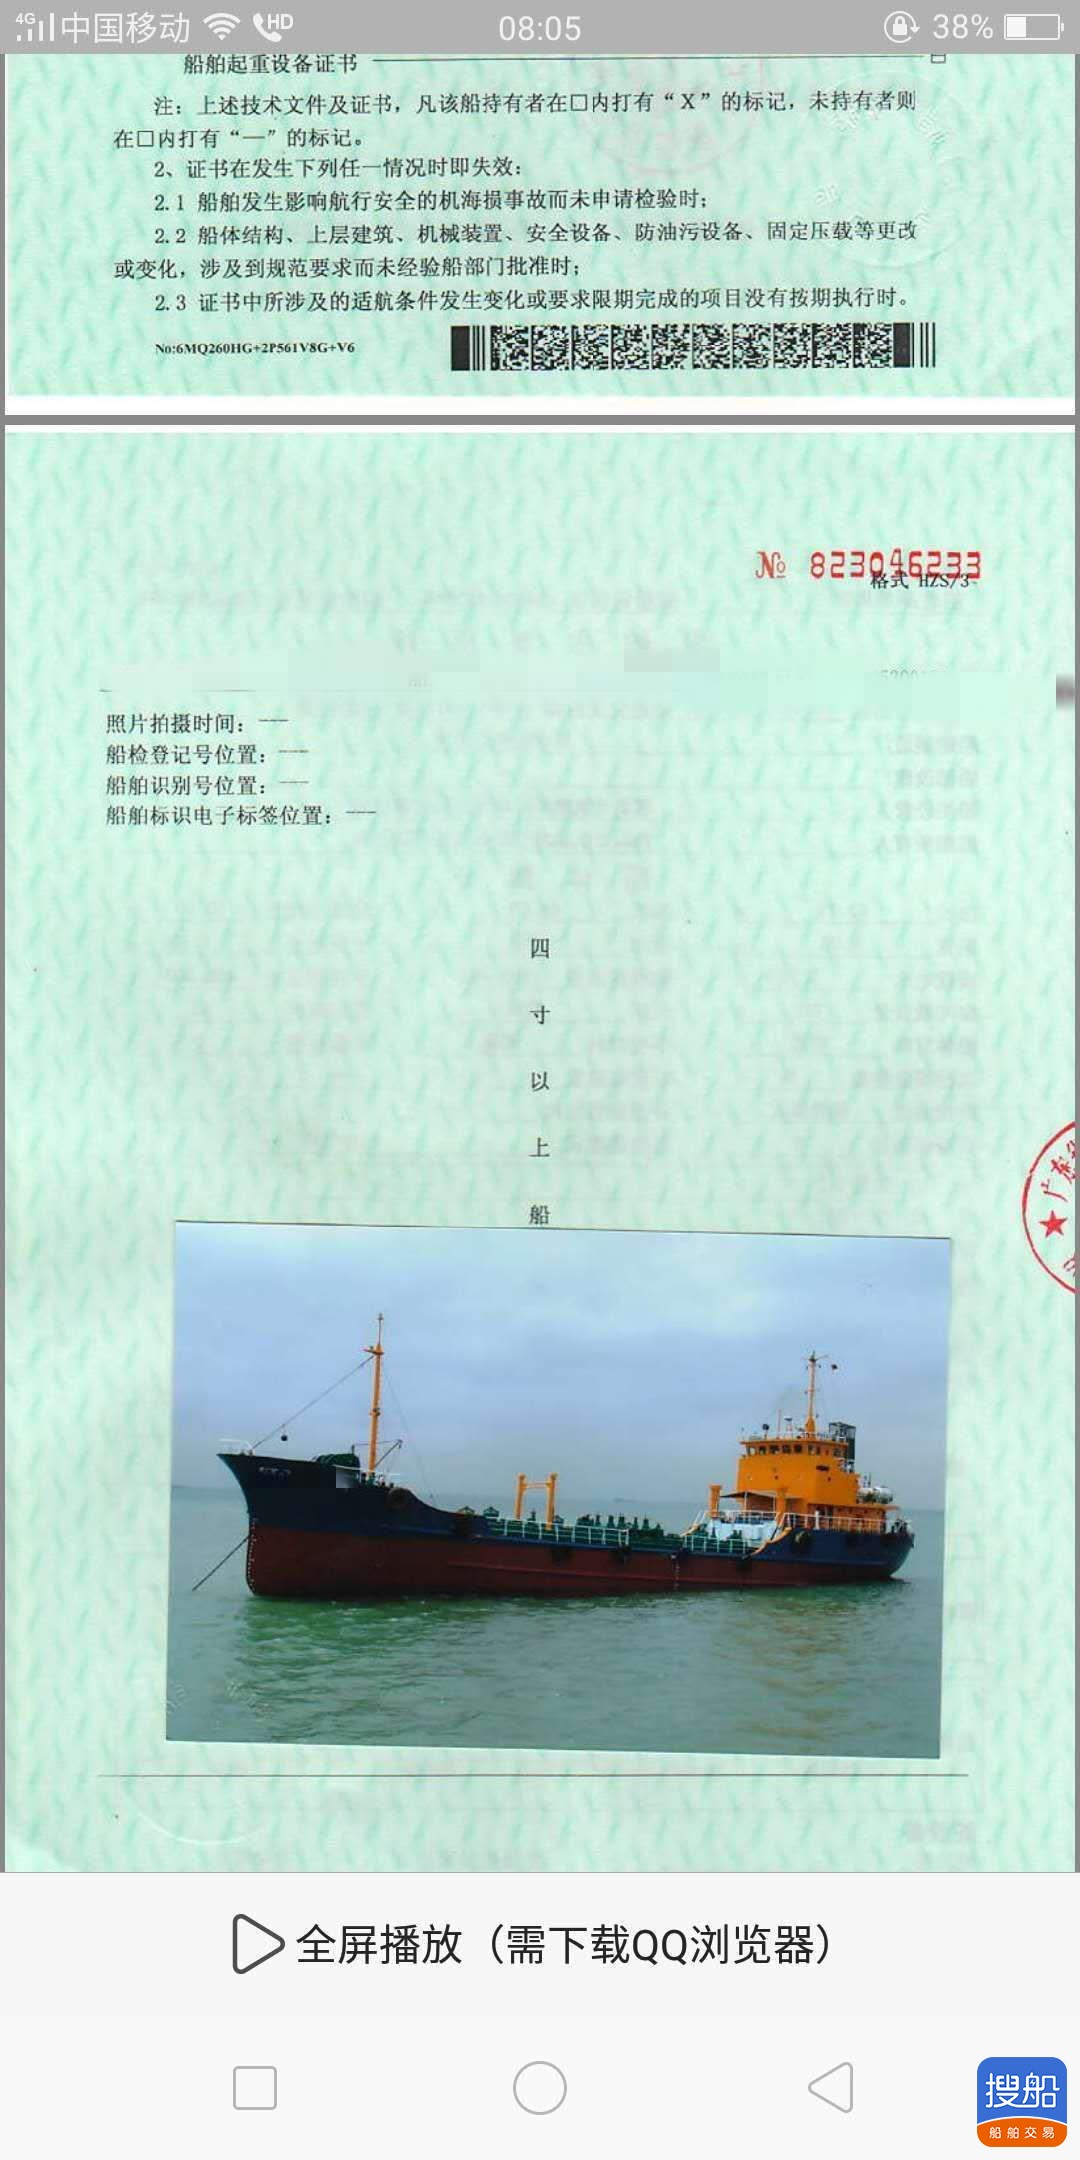 出售:730T 日本溢油船